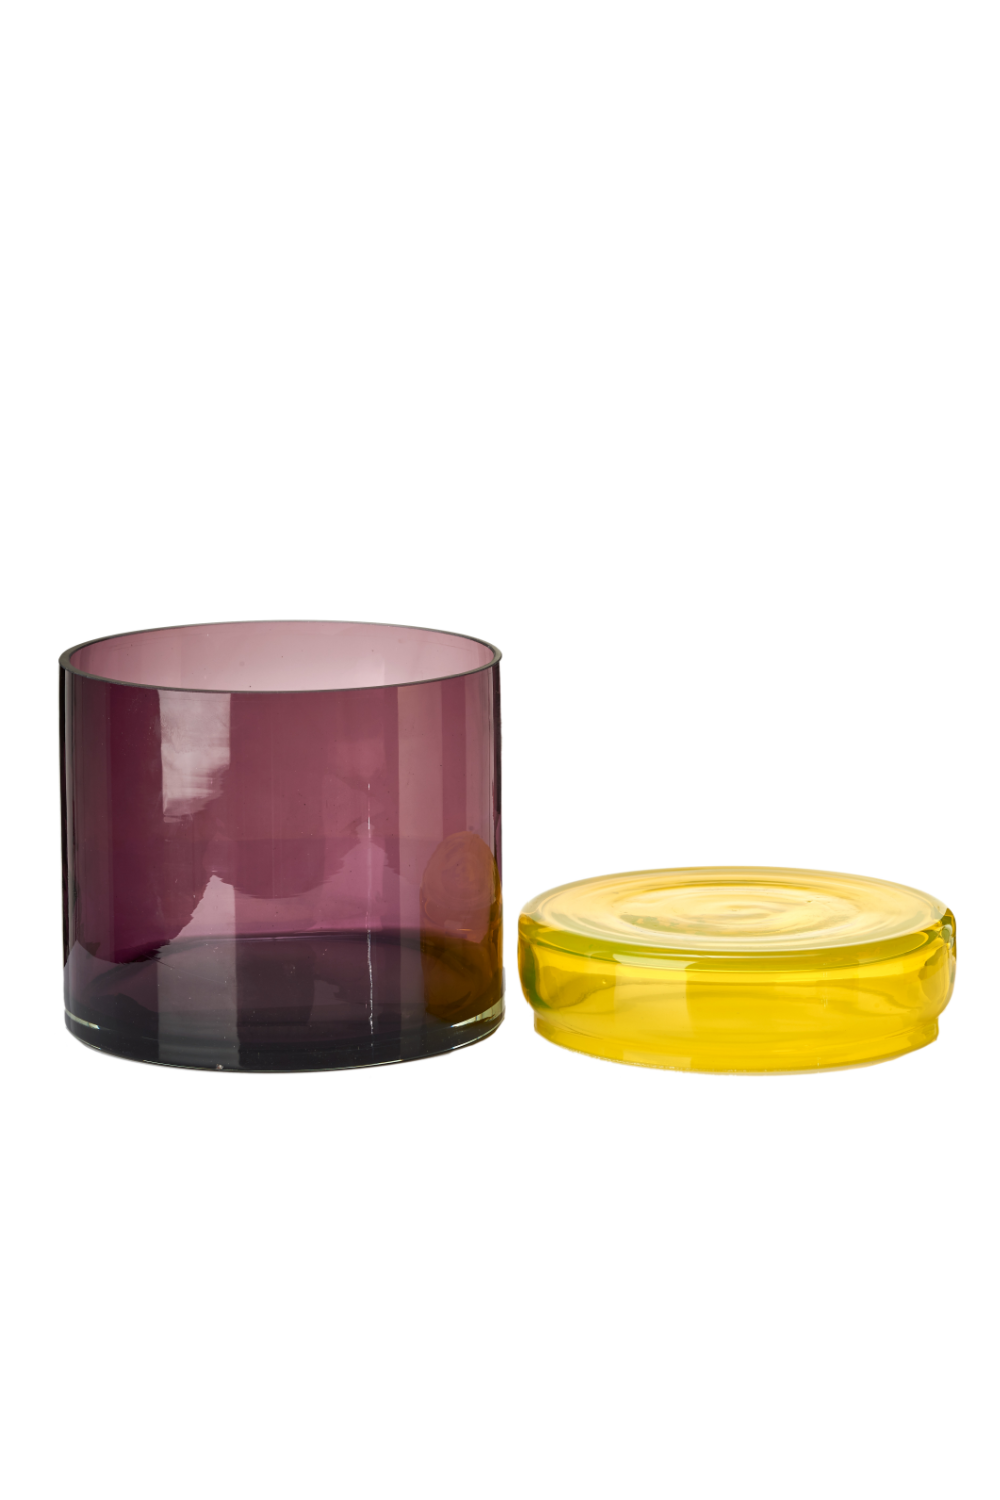 Multi-Colored Glass Caps and Jars | Pols Potten | Oroa.com